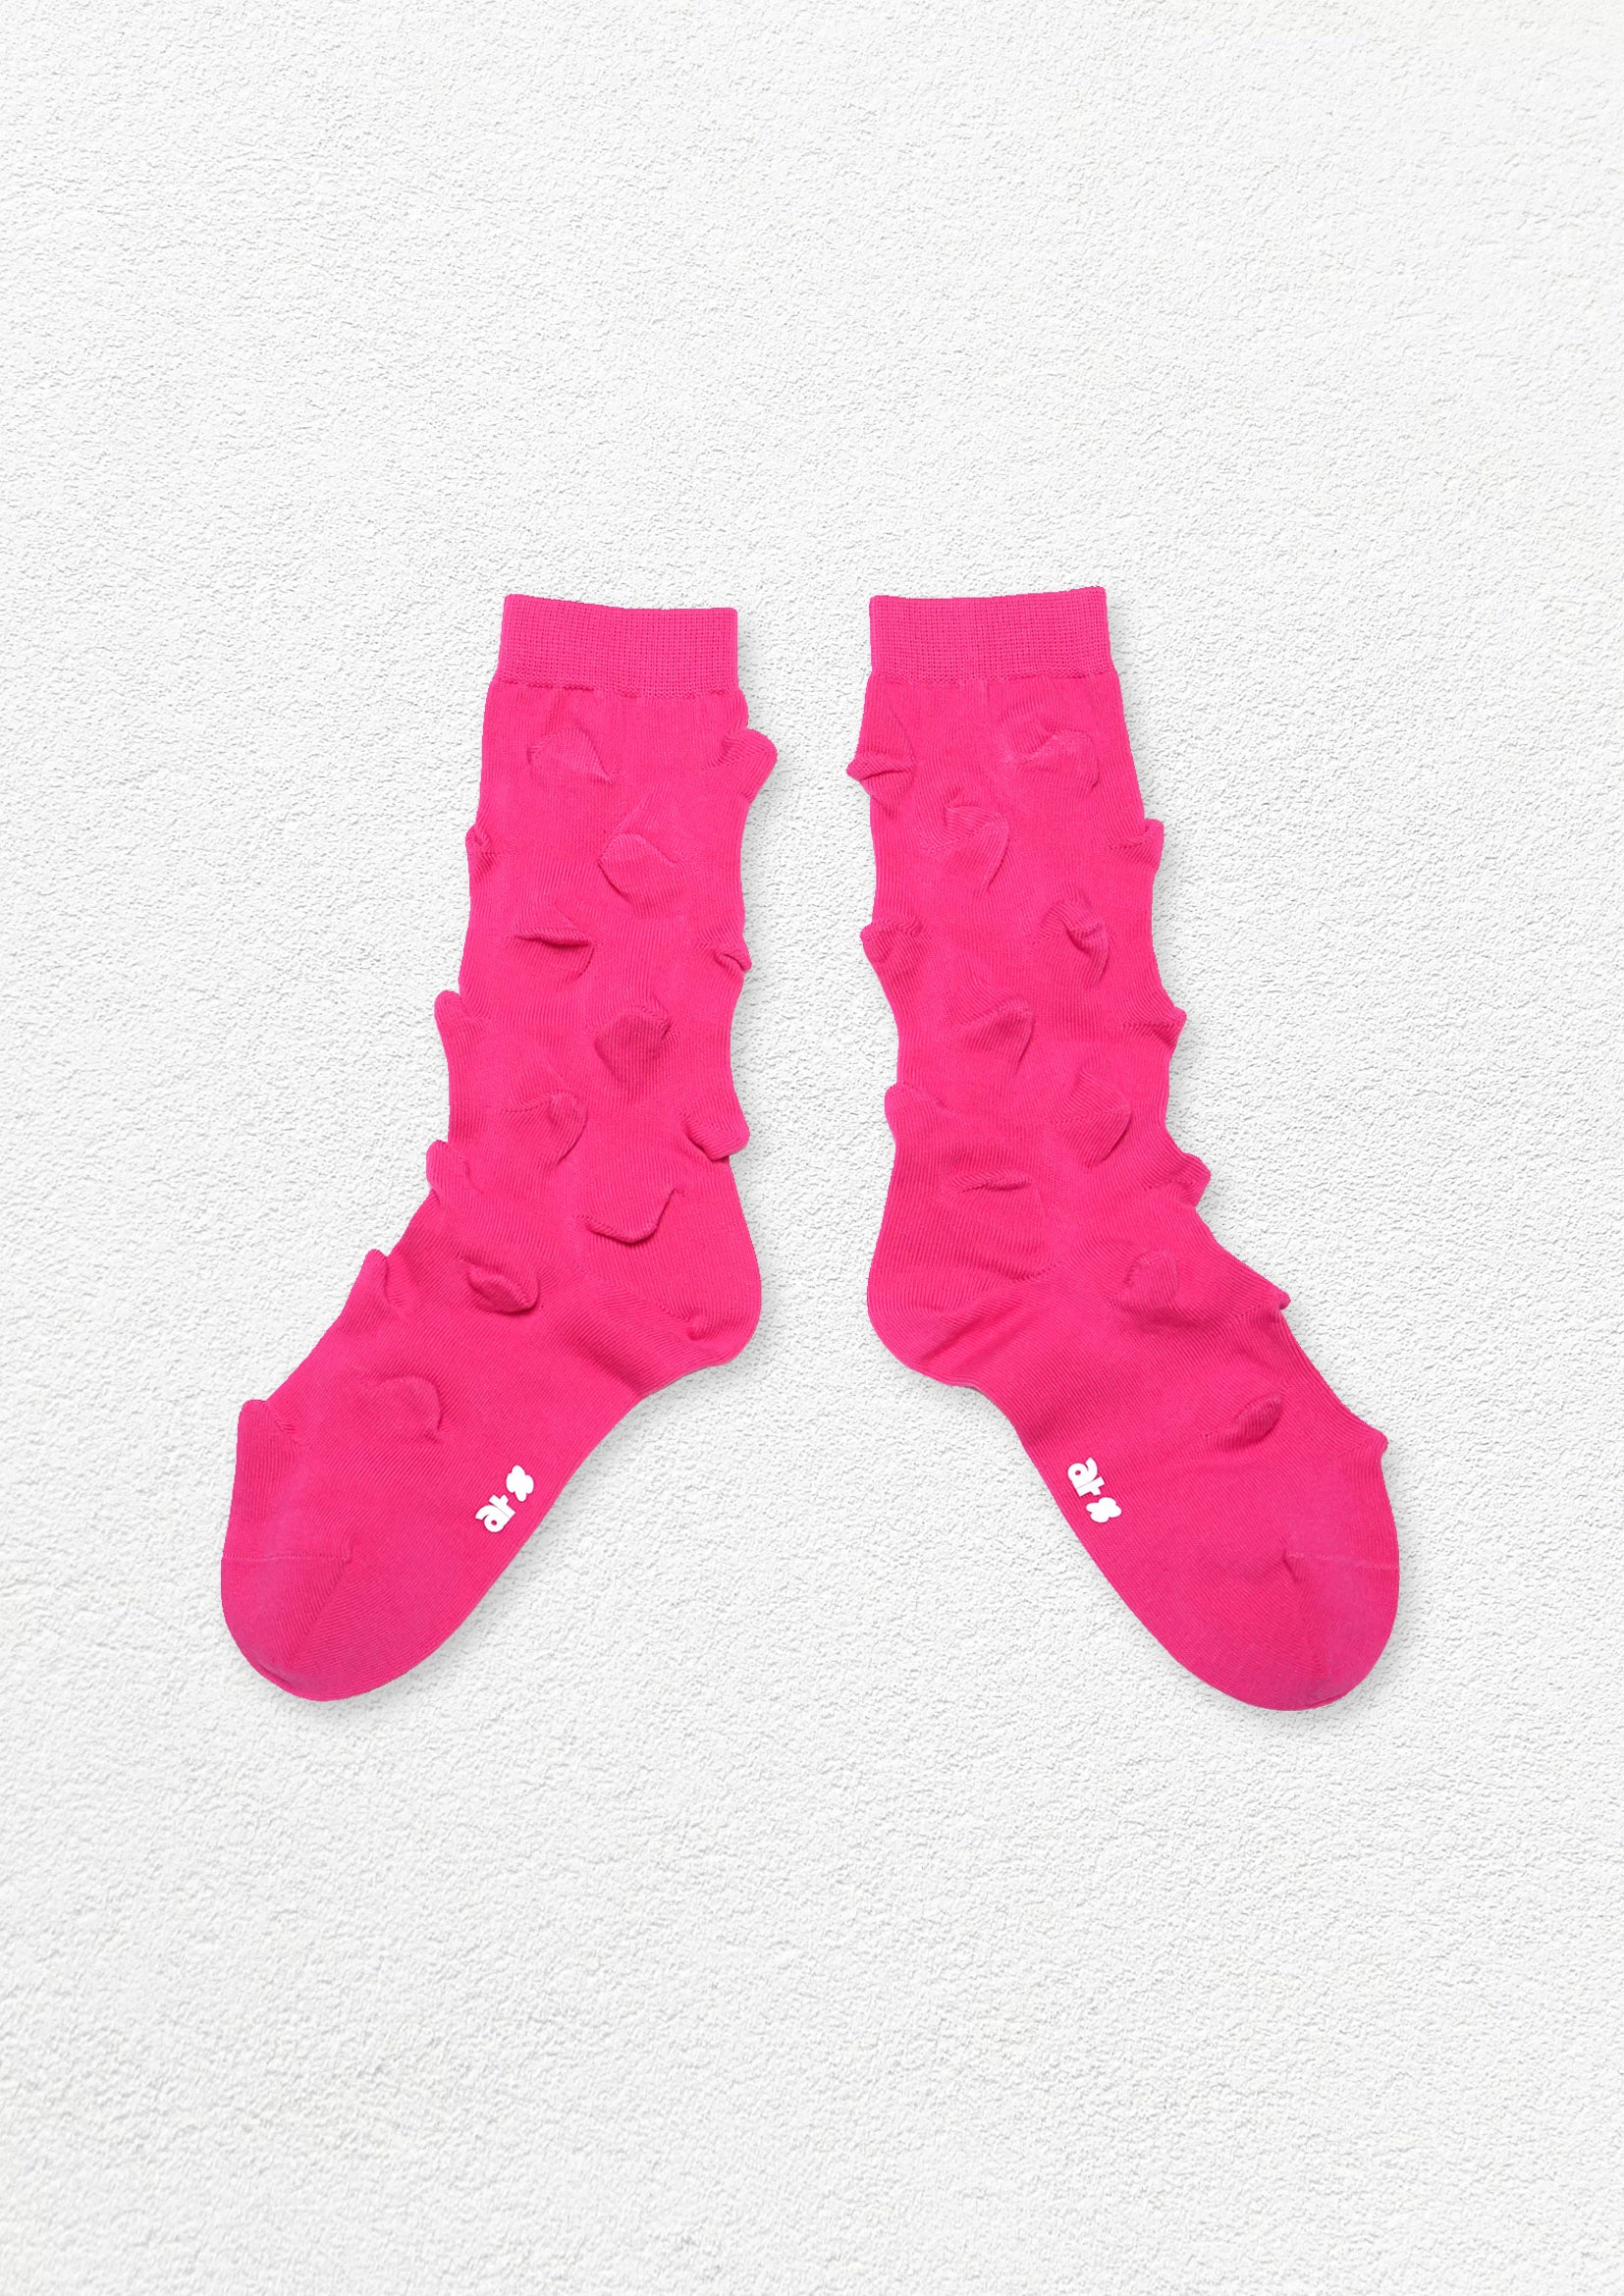 Hedgehog bumpy mid-calf sock - hot pink